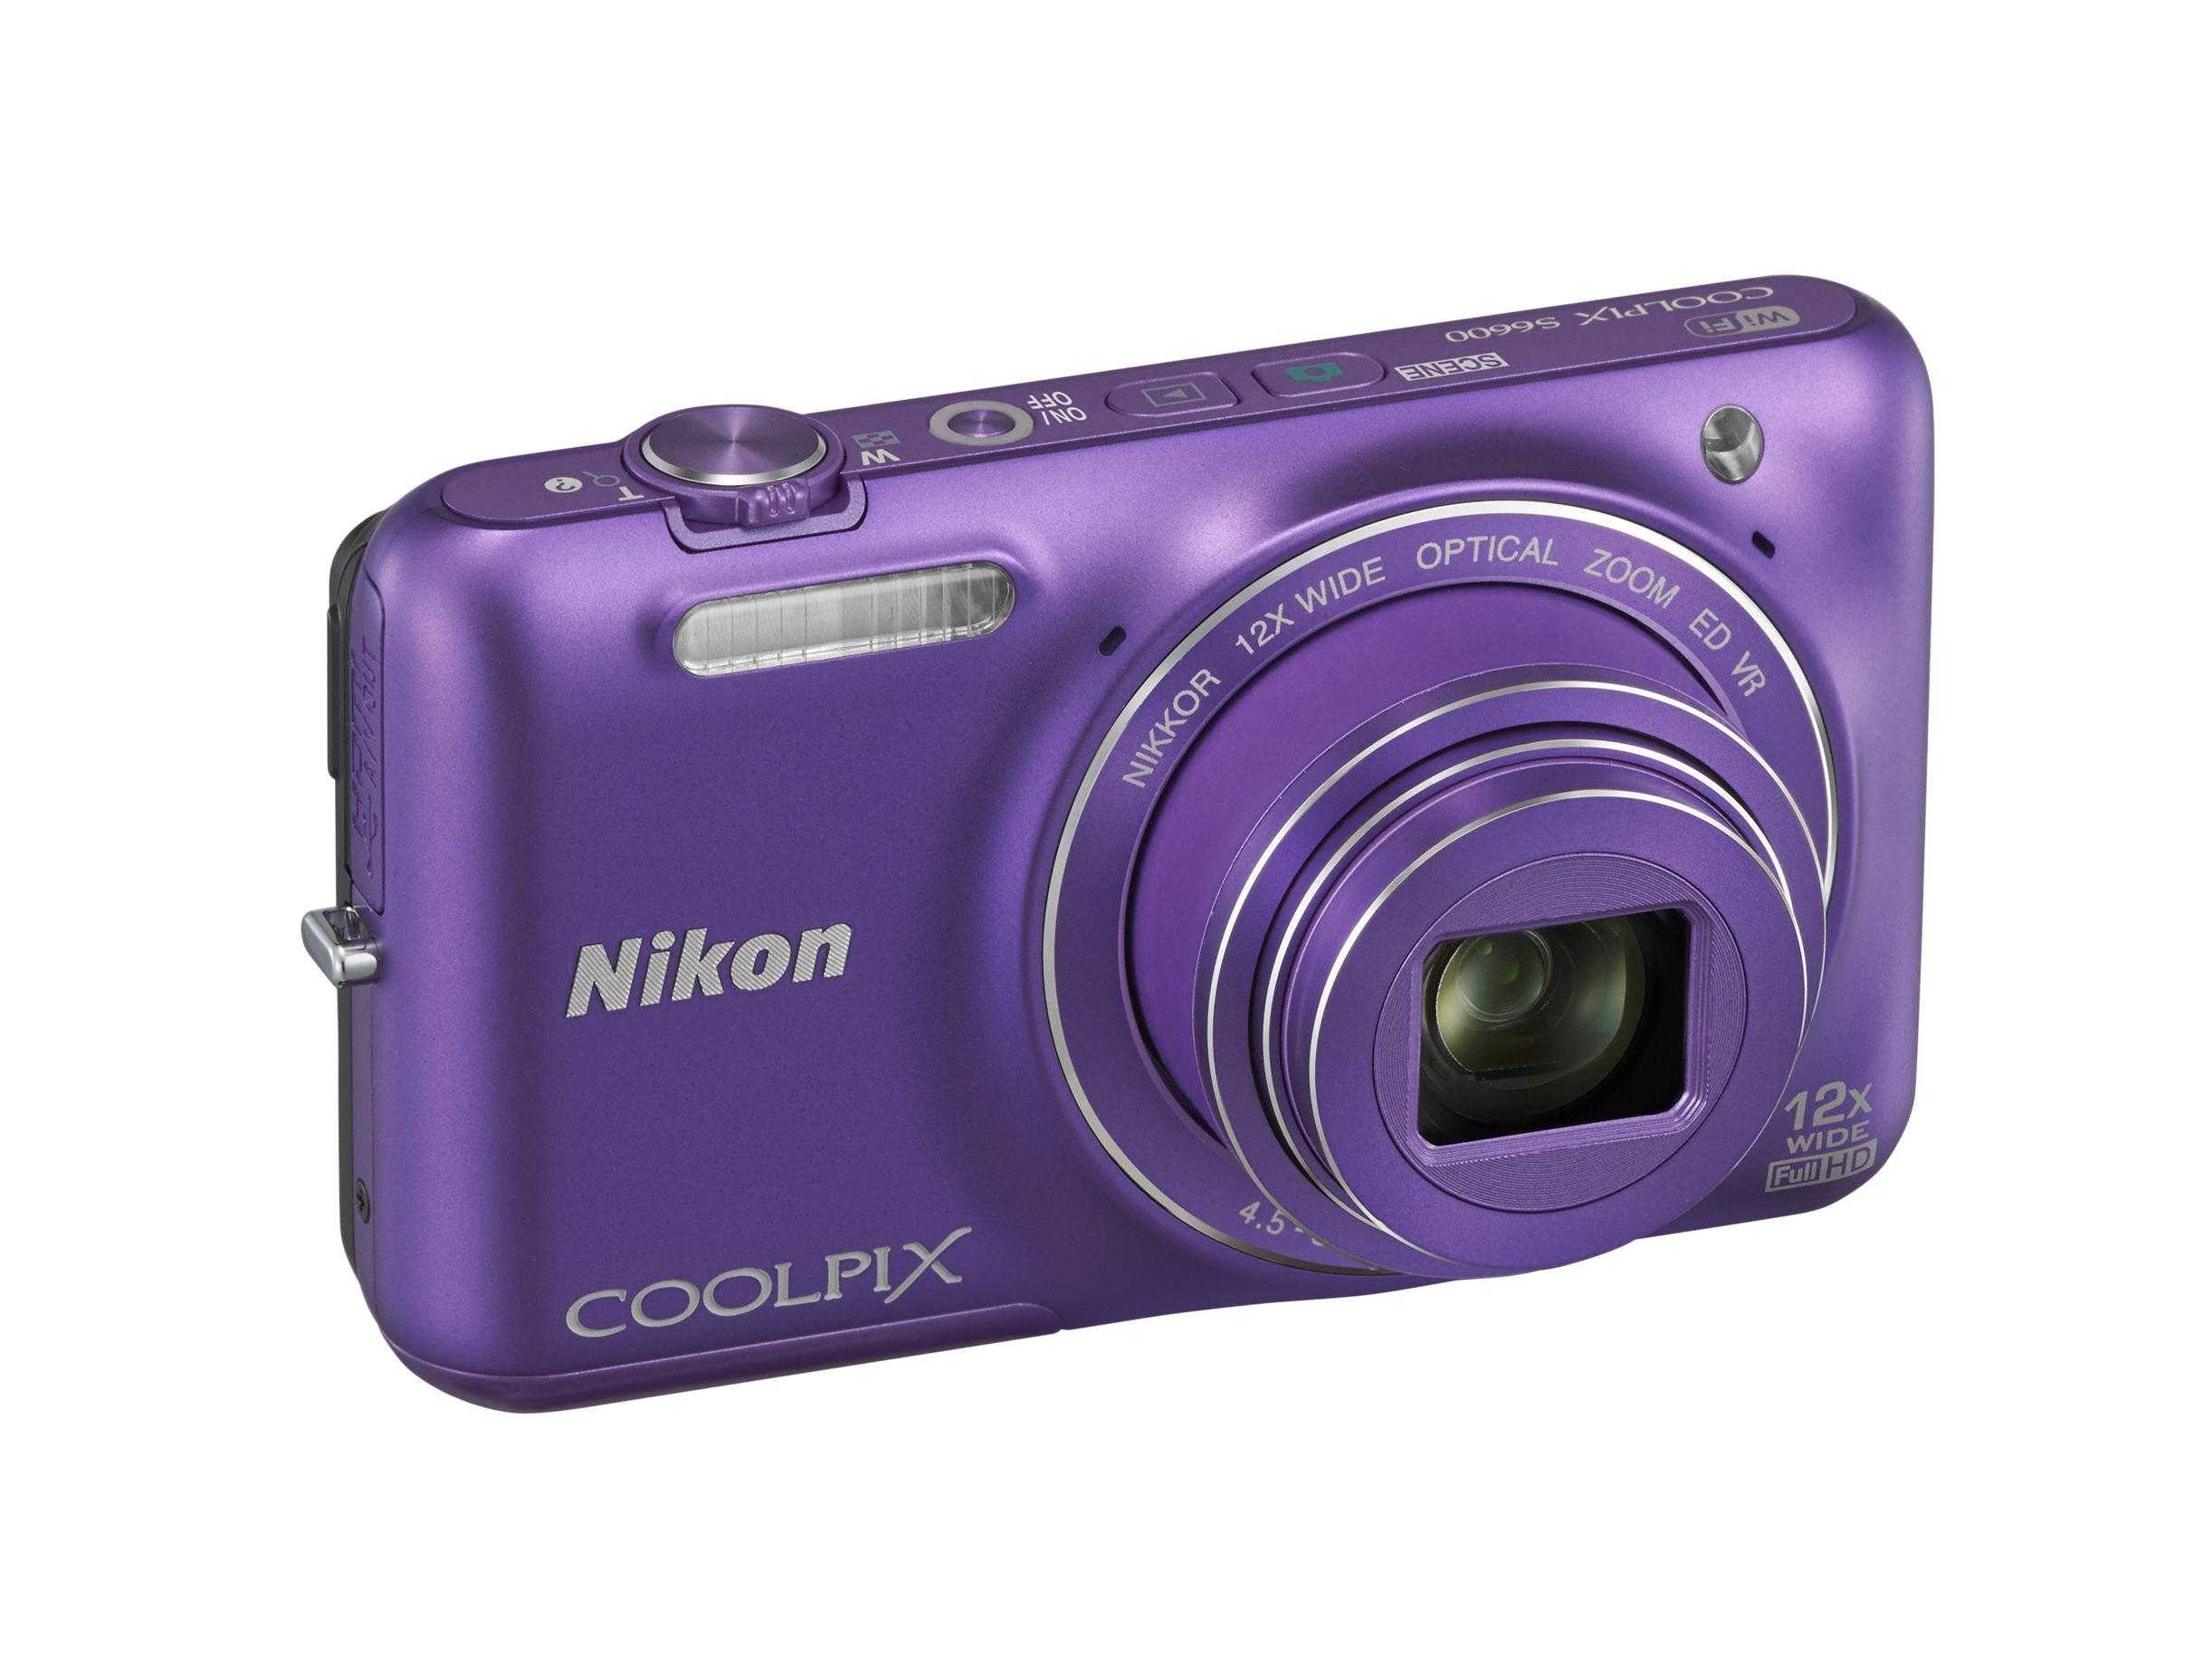 Цифровой фотоаппарат Nikon Coolpix S30 - подробные характеристики обзоры видео фото Цены в интернет-магазинах где можно купить цифровую фотоаппарат Nikon Coolpix S30